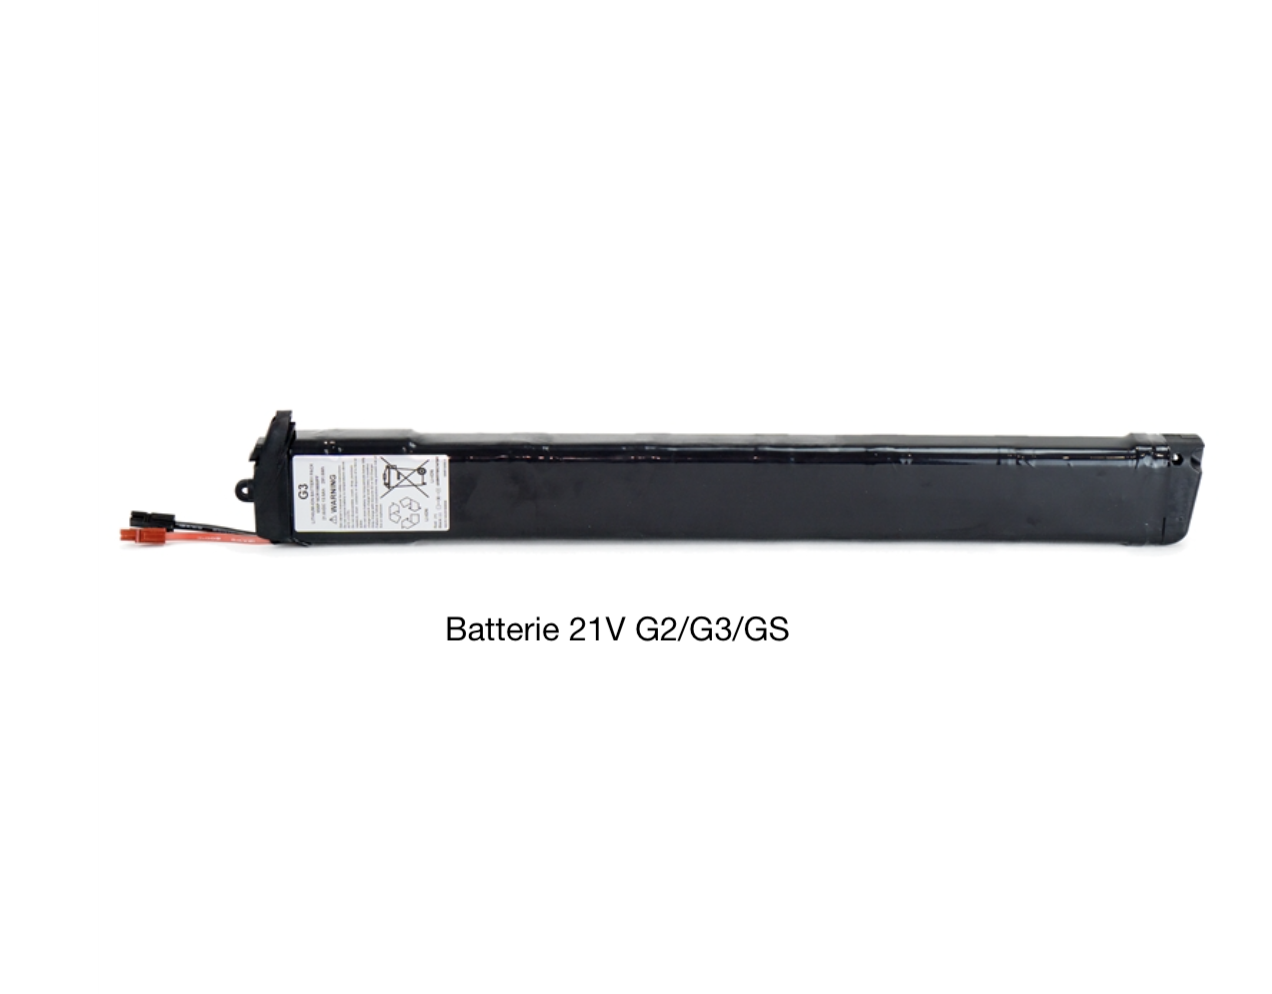 Batterie Gocycle G2 G3 GS 21V 375Wh battery